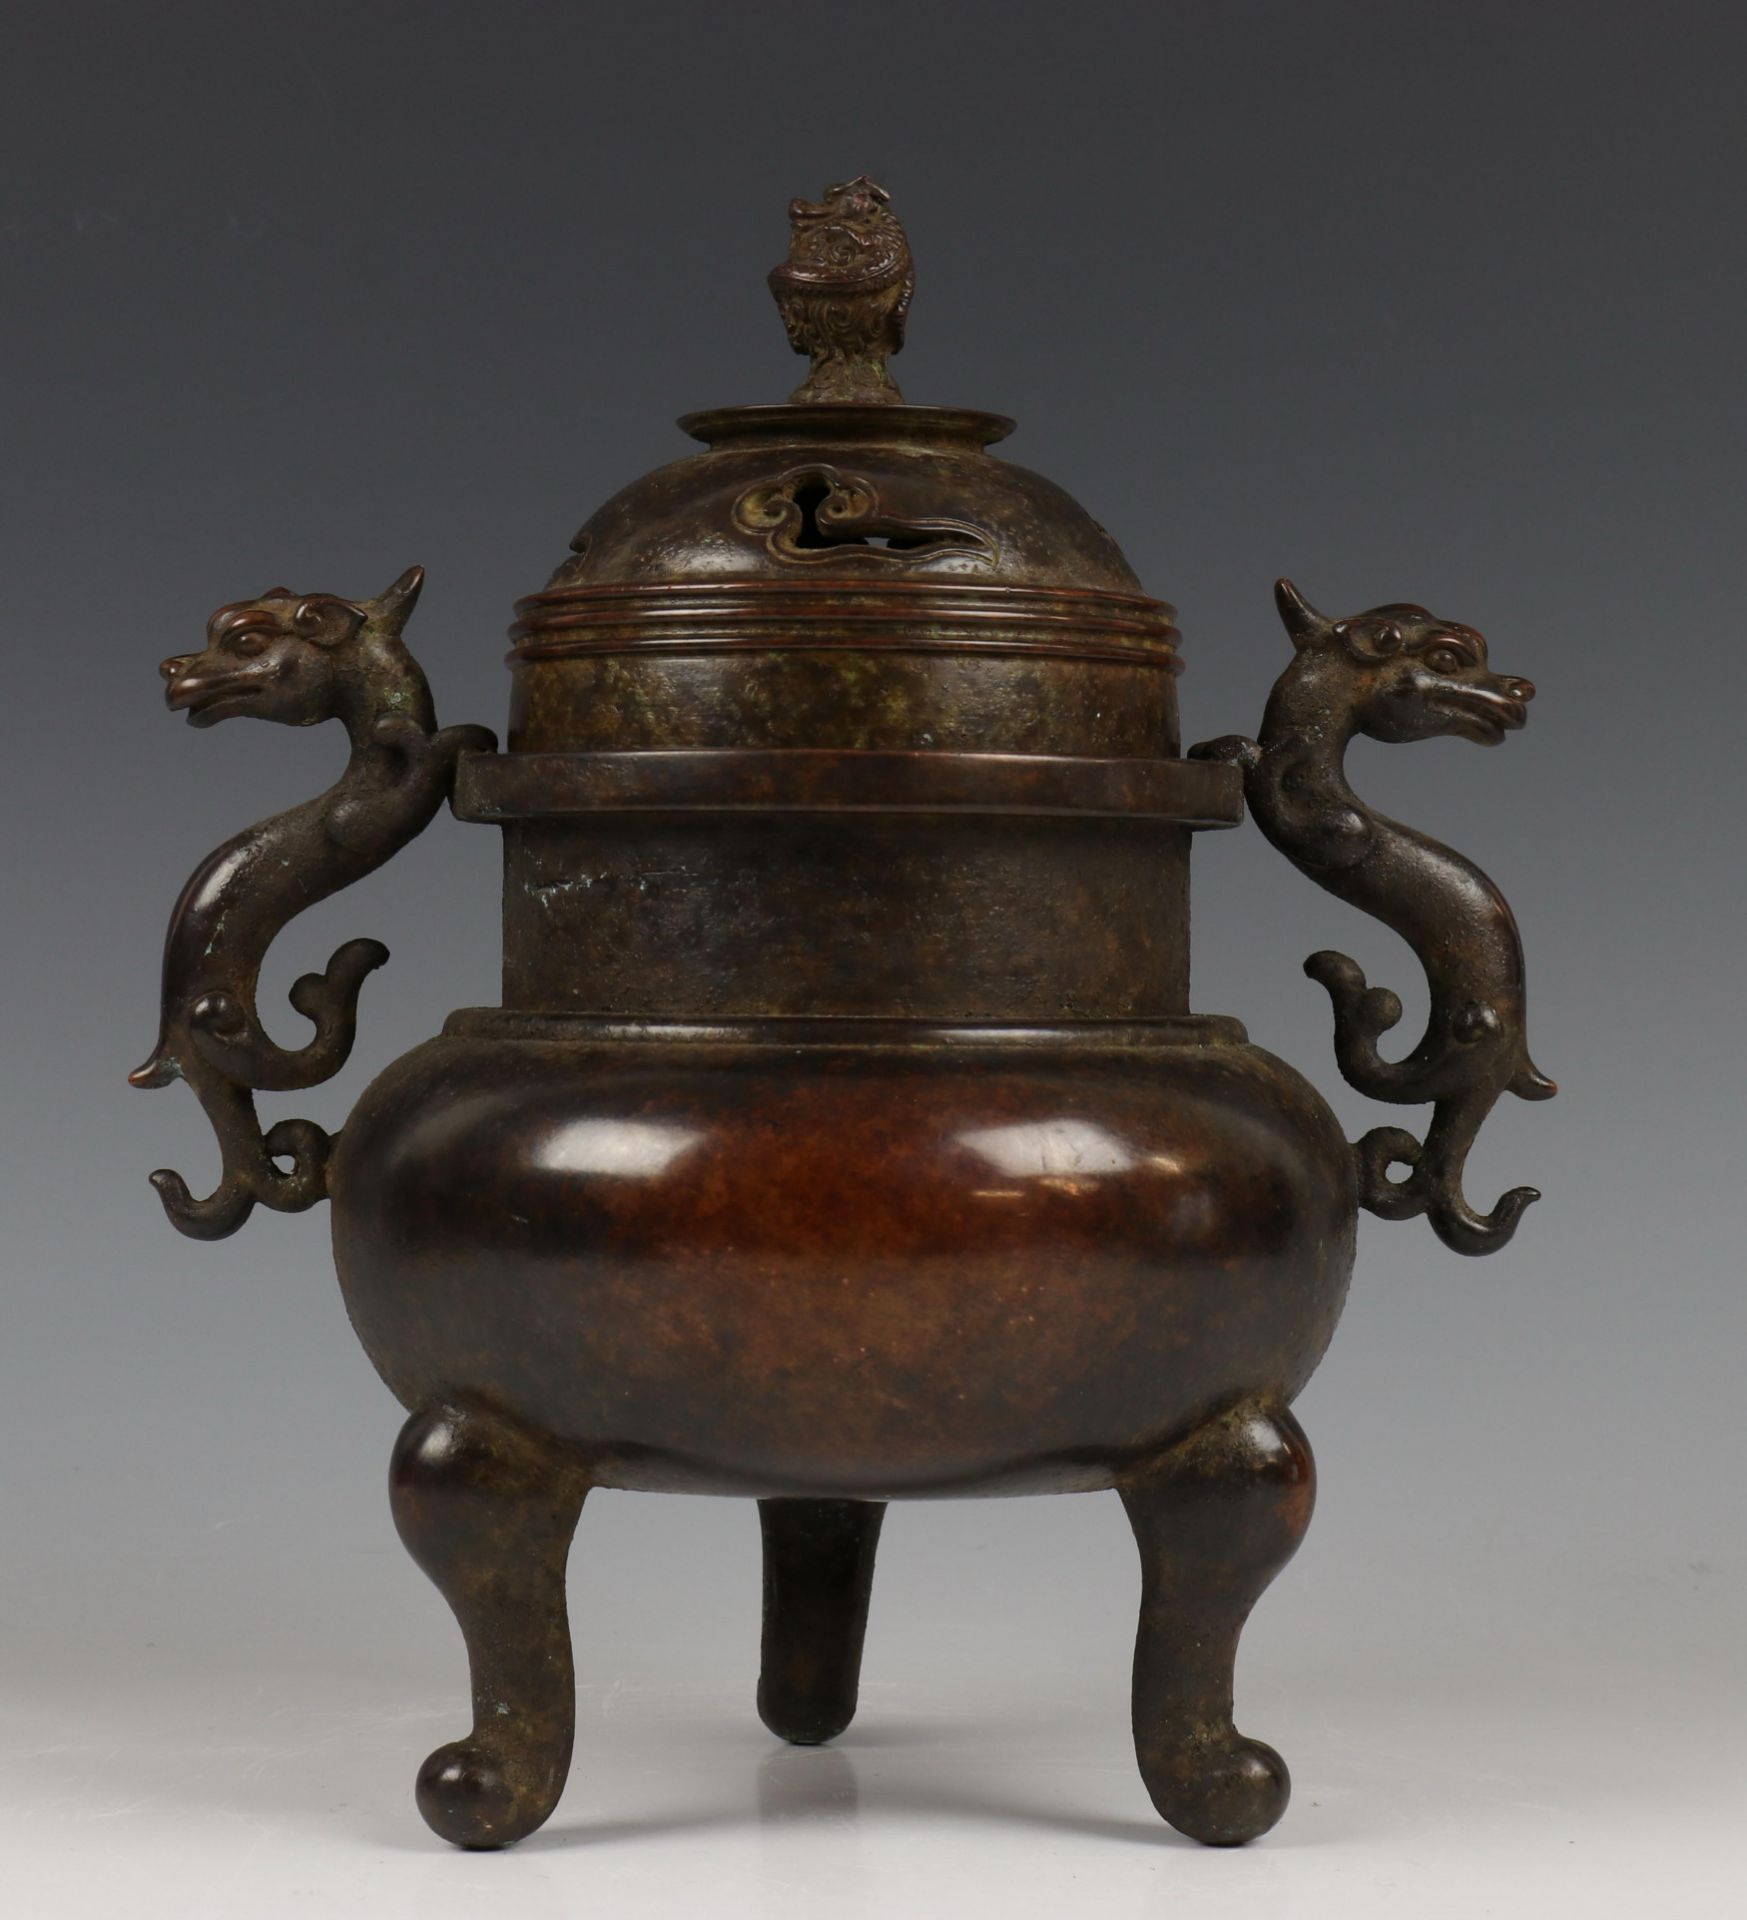 China, bronzen wierookvat, 19e-20e eeuw,